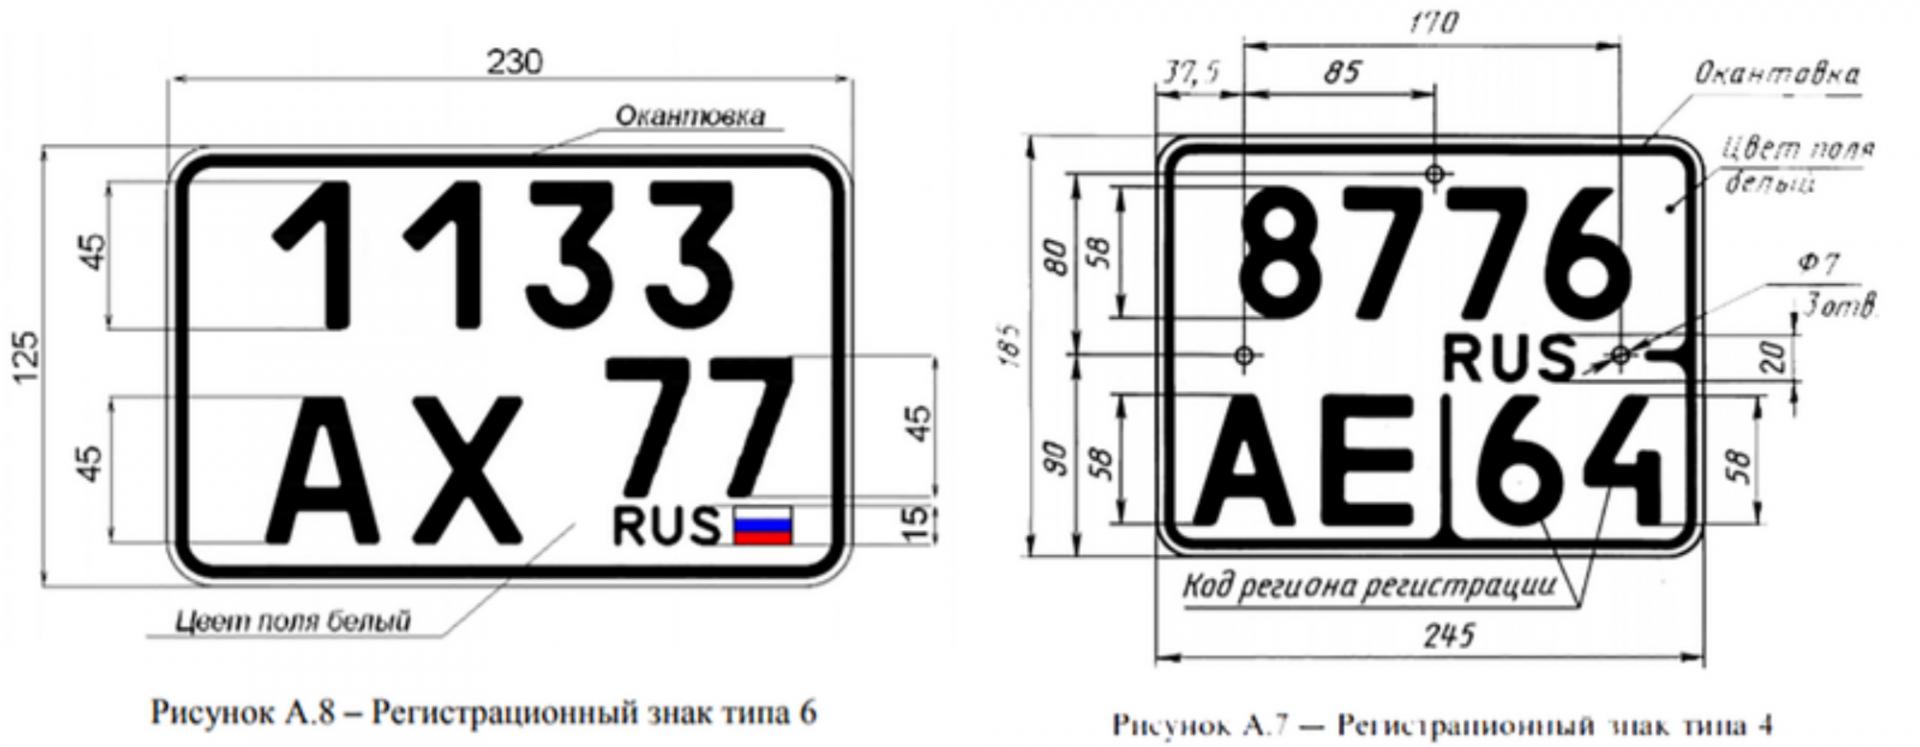 Новые номера дорог. Гос номерной знак автомобиля размер. Размер номерного знака мотоцикла новый. Размеры гос номерного знака для мотоцикла. Габариты номерного знака автомобиля в России.